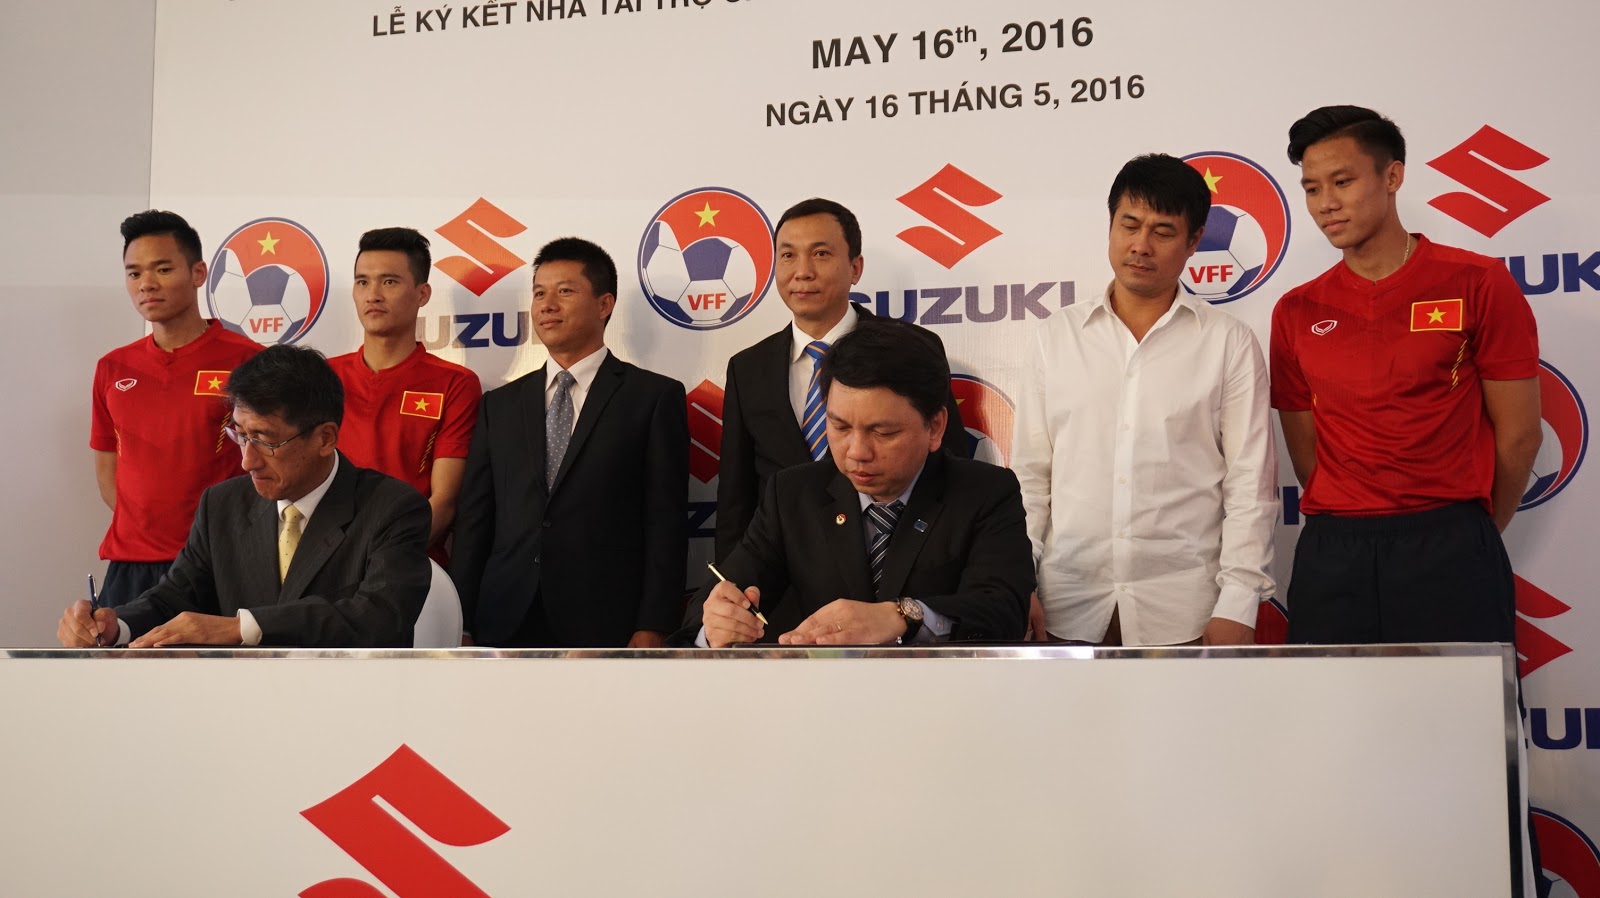 Suzuki ký kết hợp đồng tài trợ cho đội tuyển bóng đá Quốc Gia Việt Nam